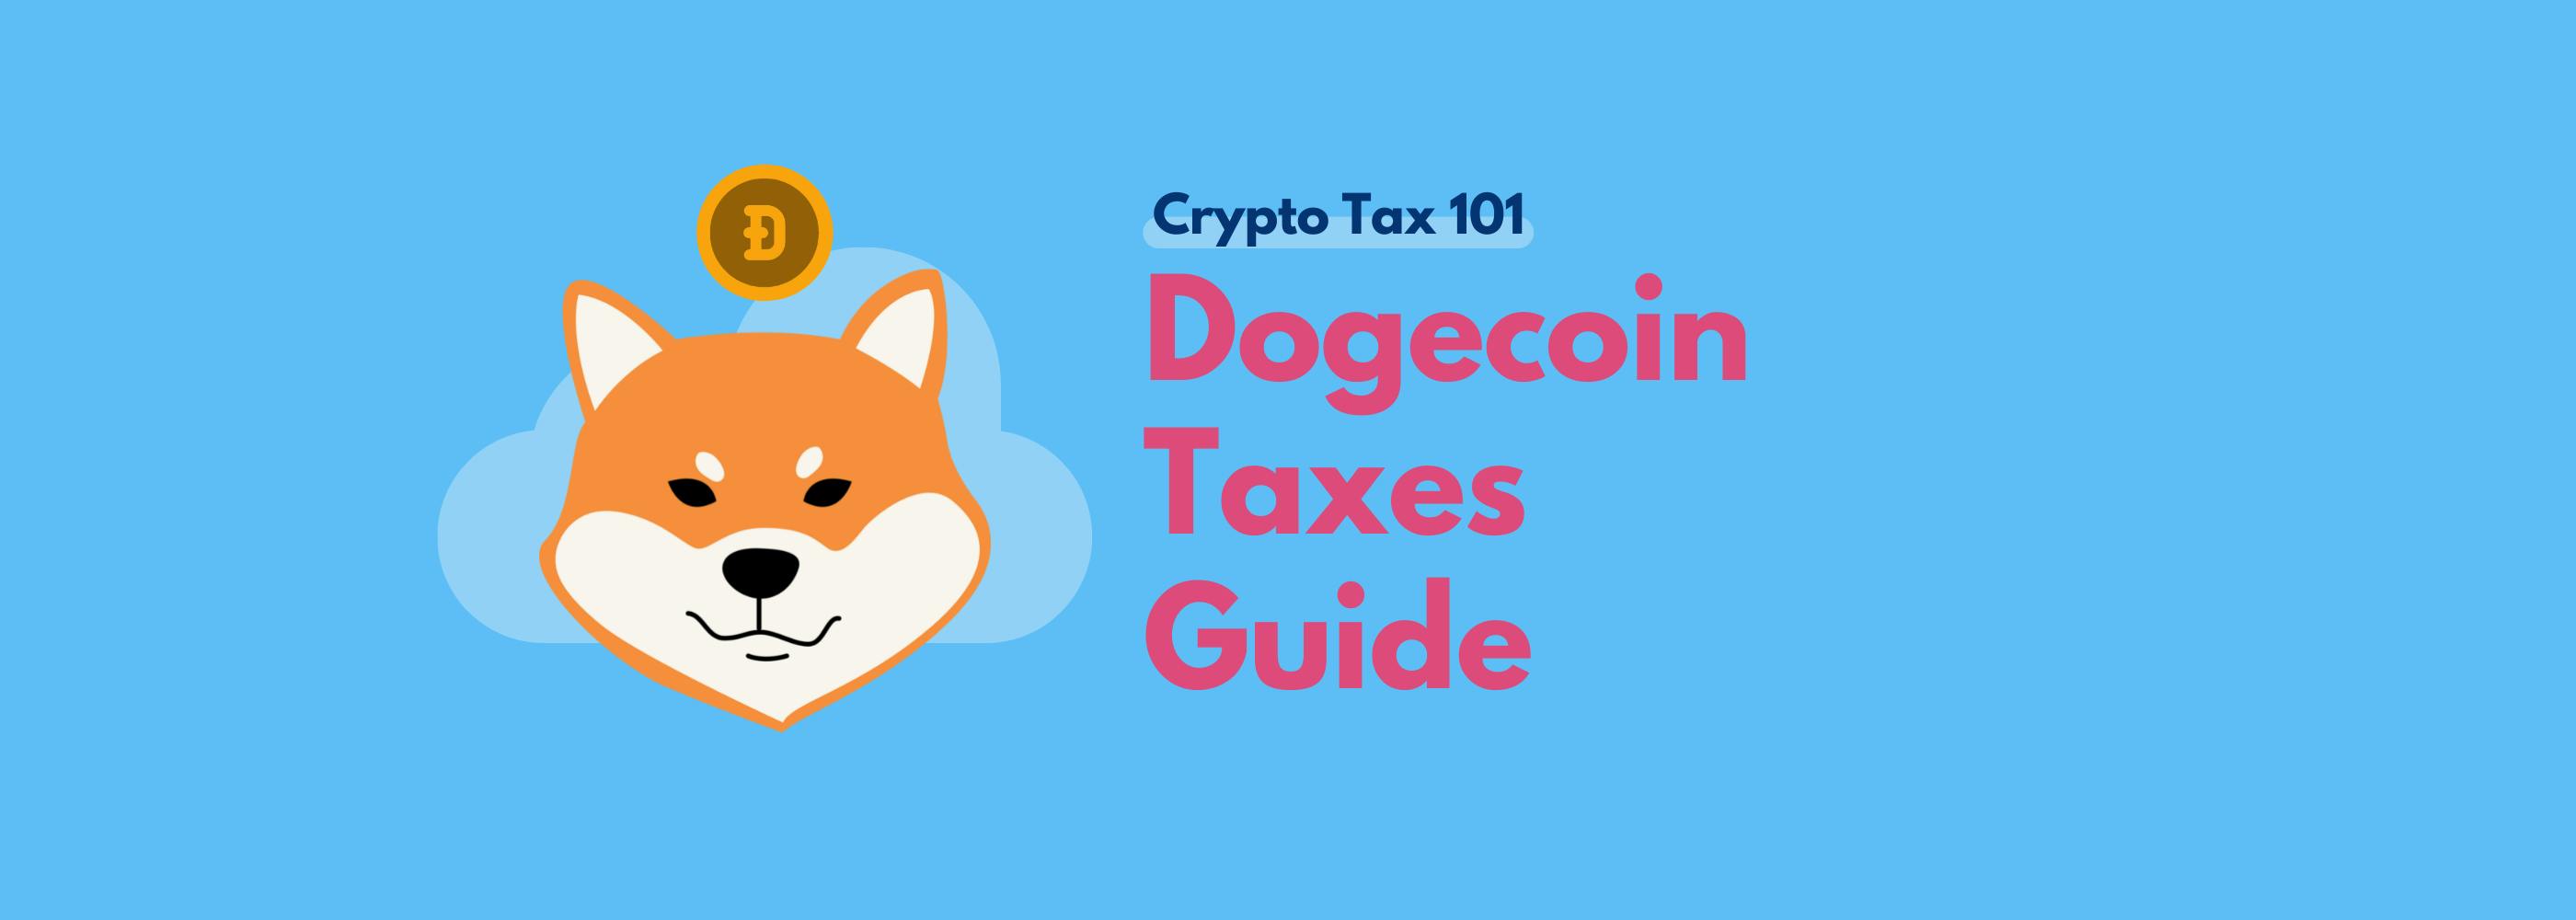 Dogecoin taxes guide